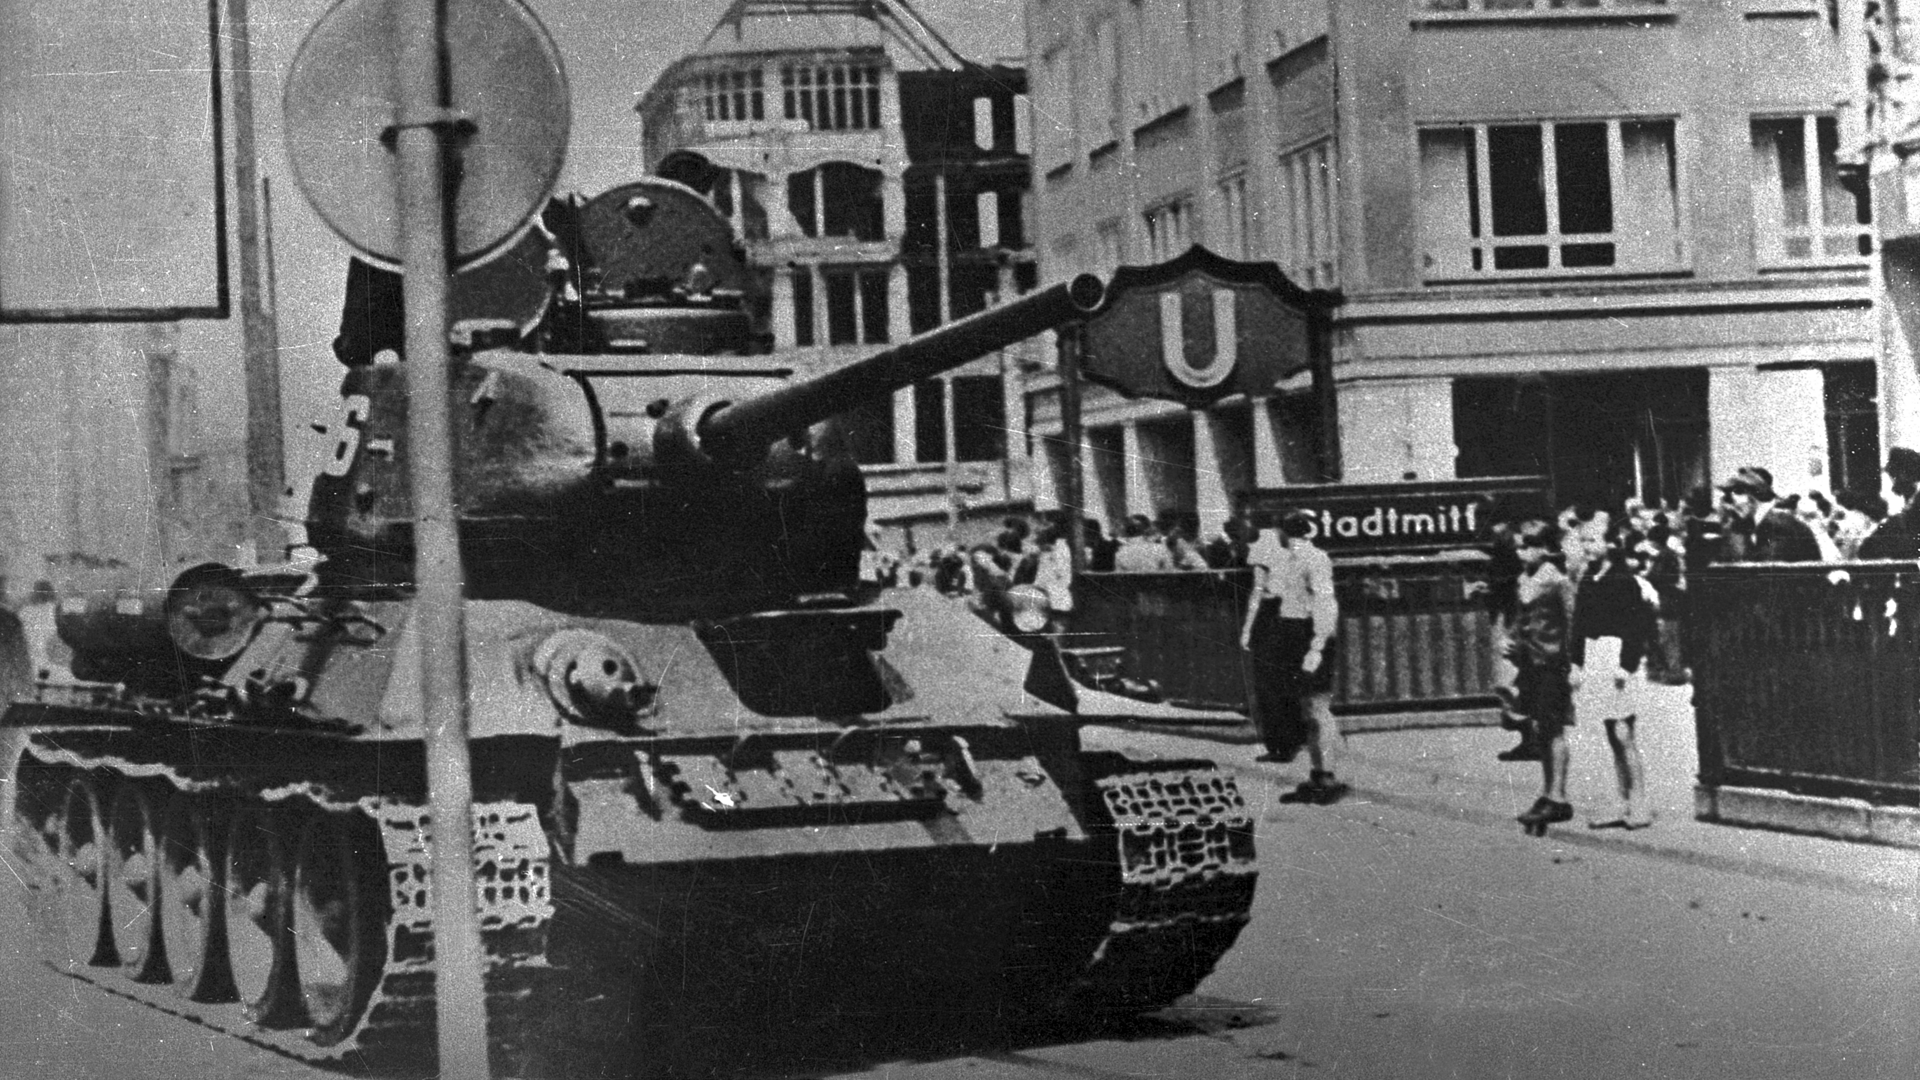 Ein sowjetischer T-54 Panzer, welcher am U-Bahnhof Stadtmitte in Berlin-Friedrichshain am 17.06.1953 abgestellt worden ist. Im Hintergrund dieses Fotos kann man eine größere Ansammlung von Zivilisten erkennen.